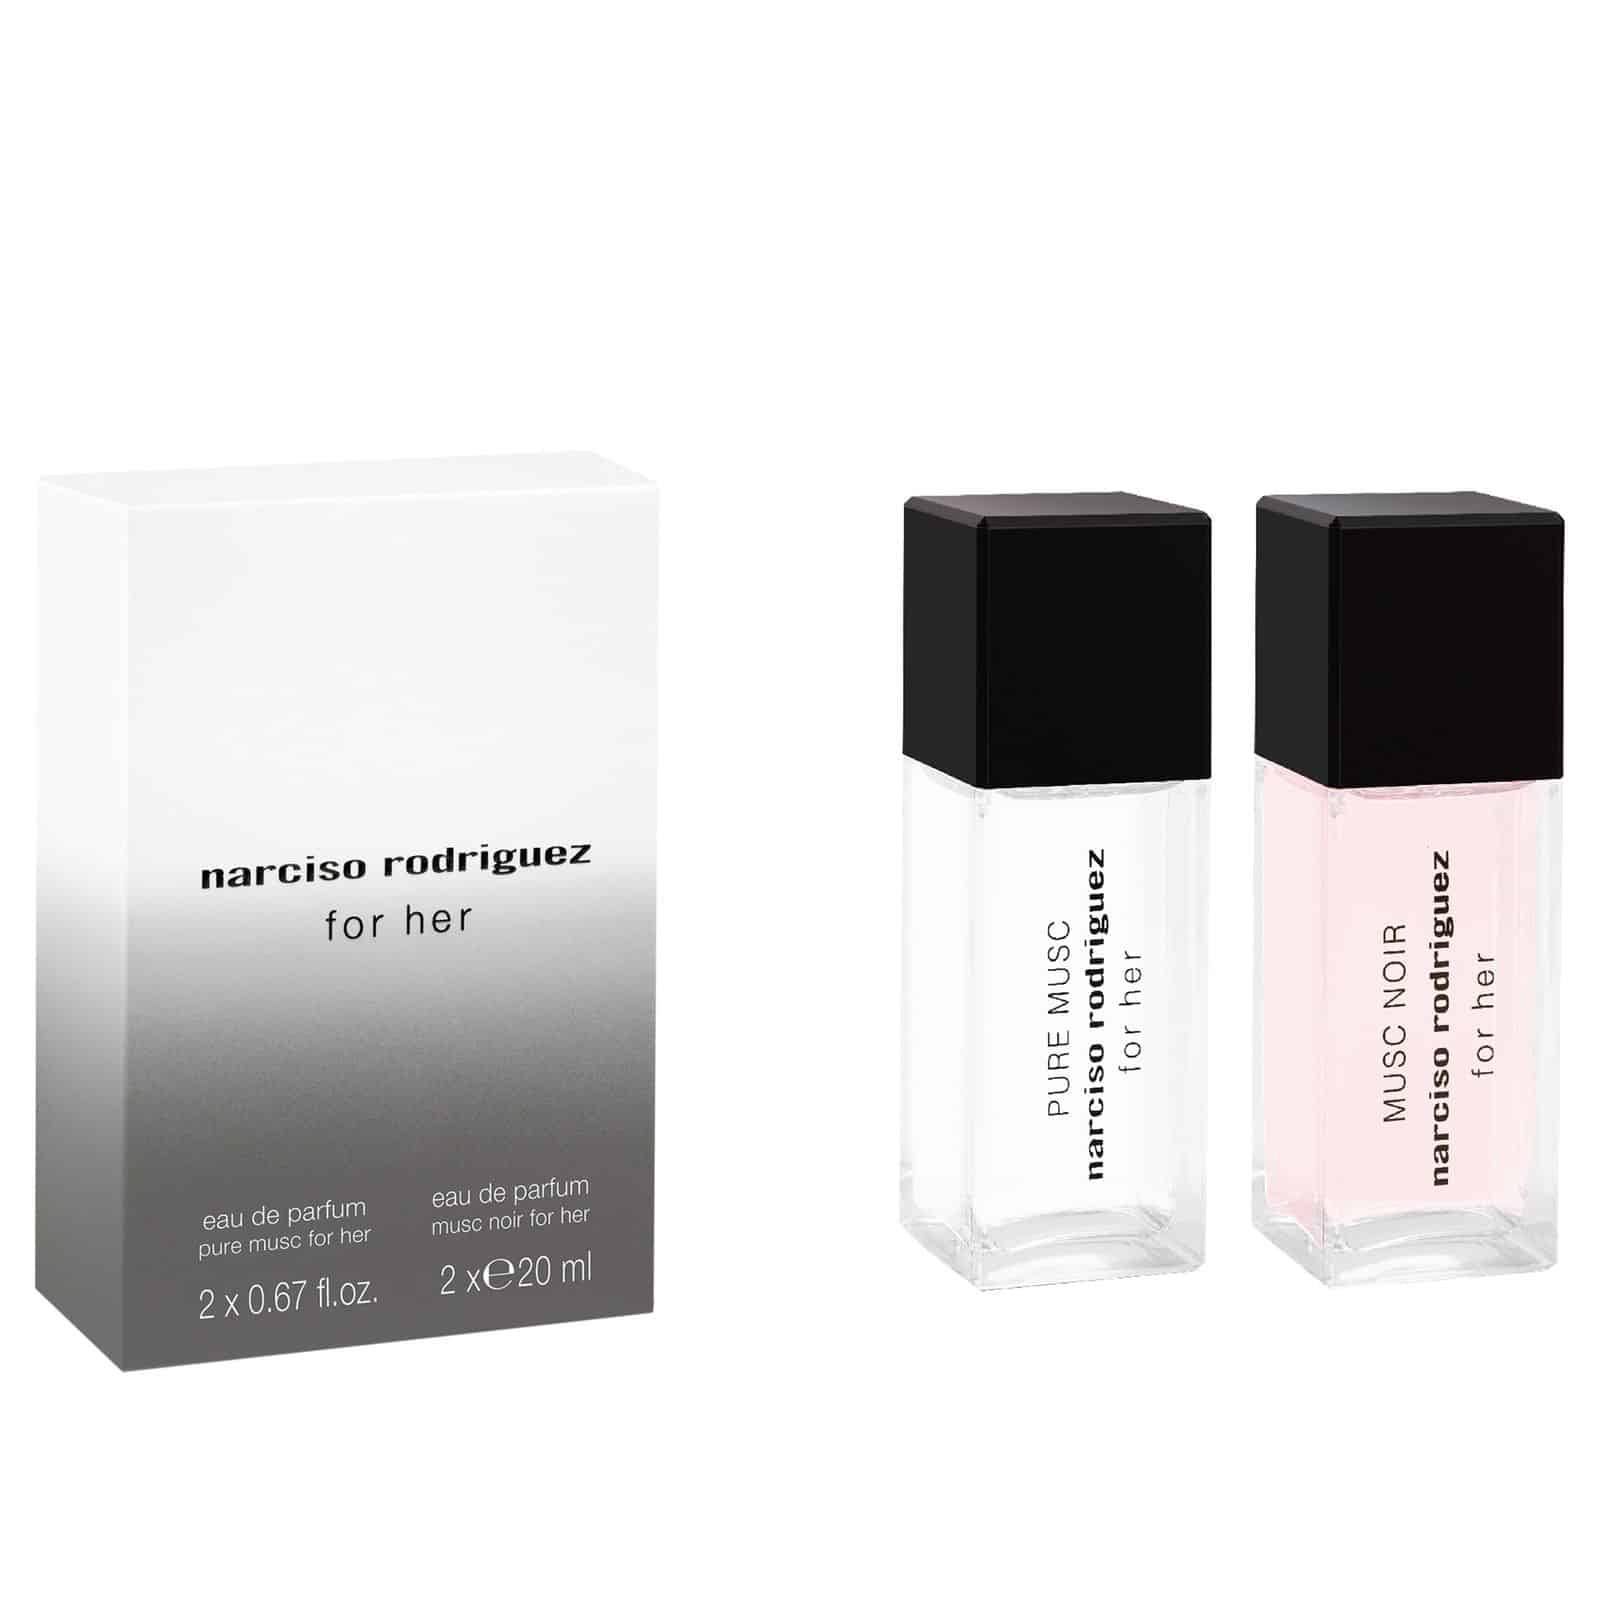 Narciso Rodriguez parfümkeverőjéért